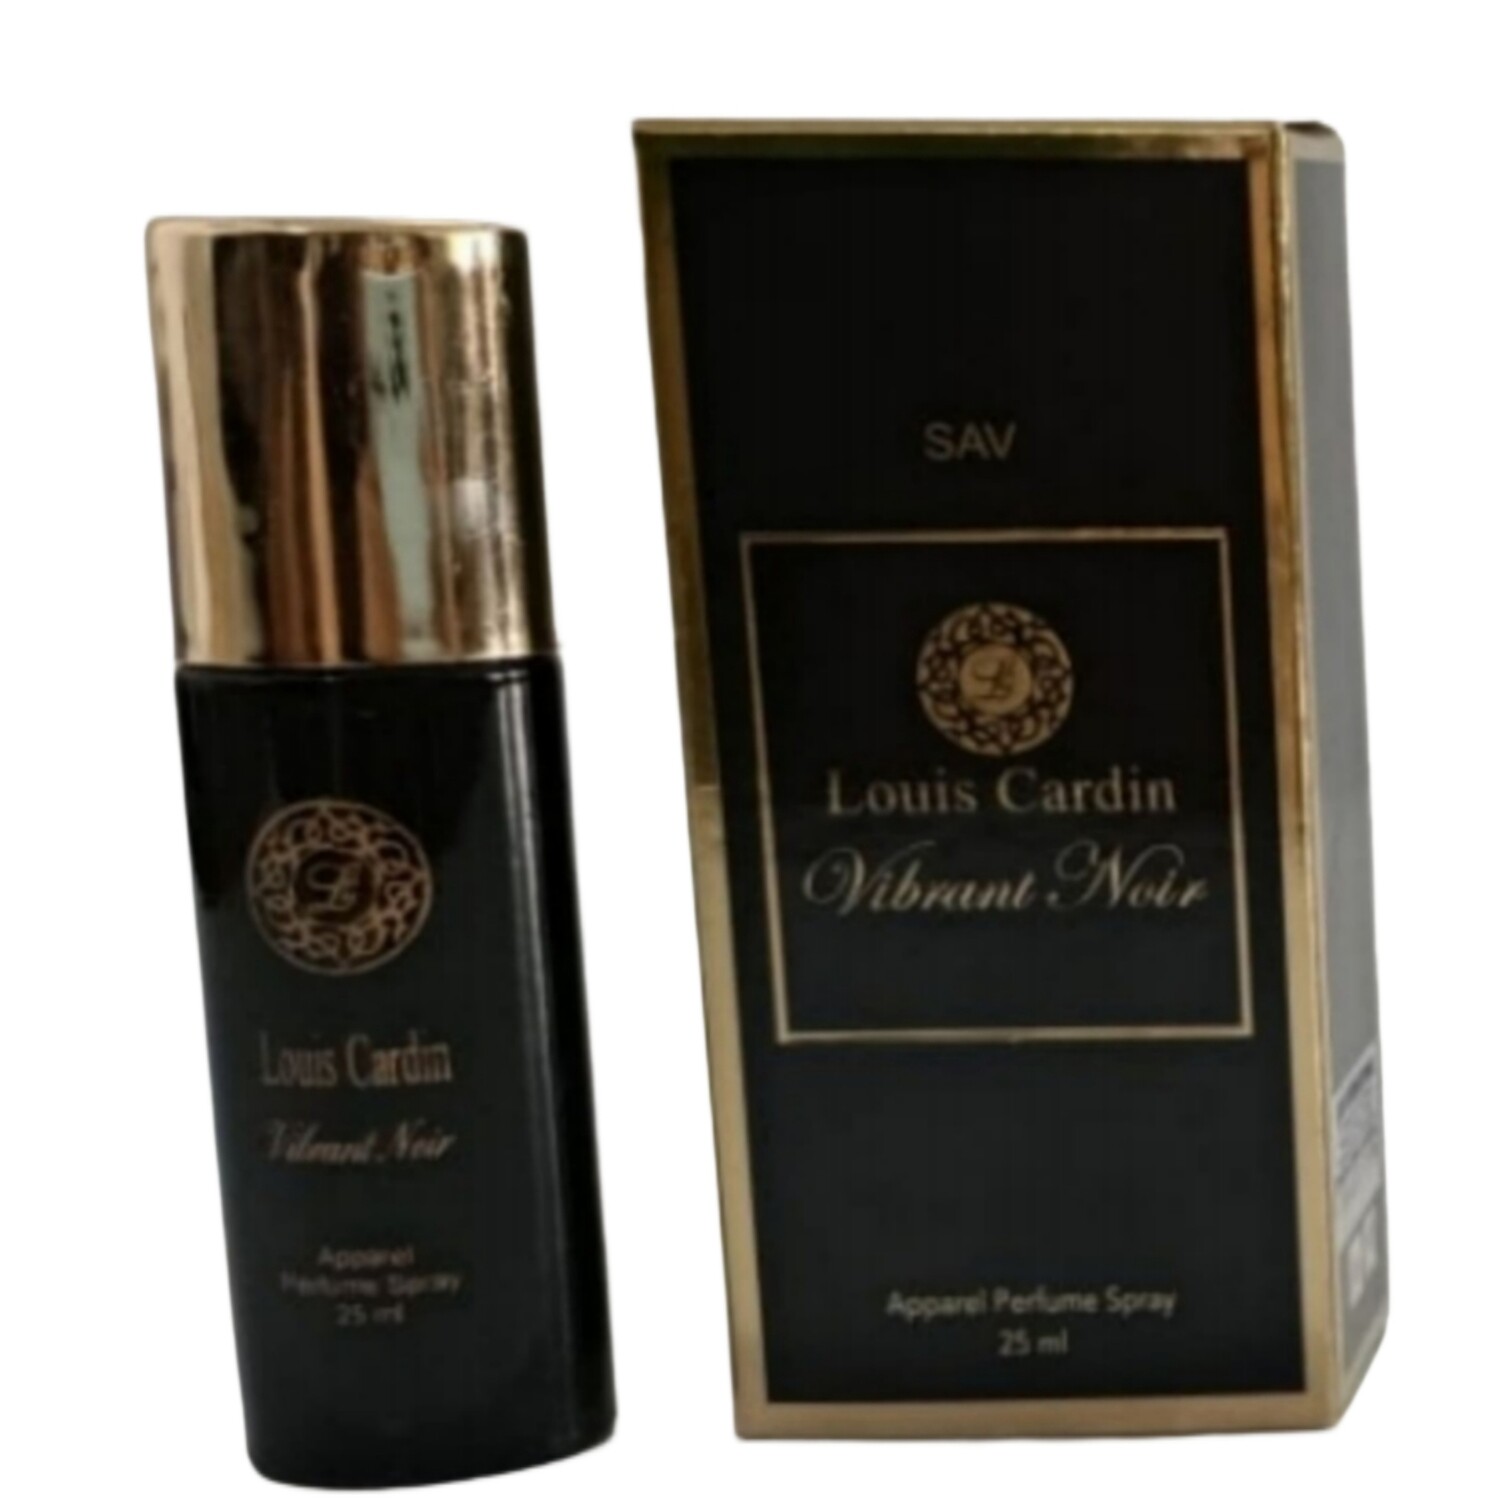 SAV Louis Cardin Vibrant Noir Apparel Perfume Spray 25 ml